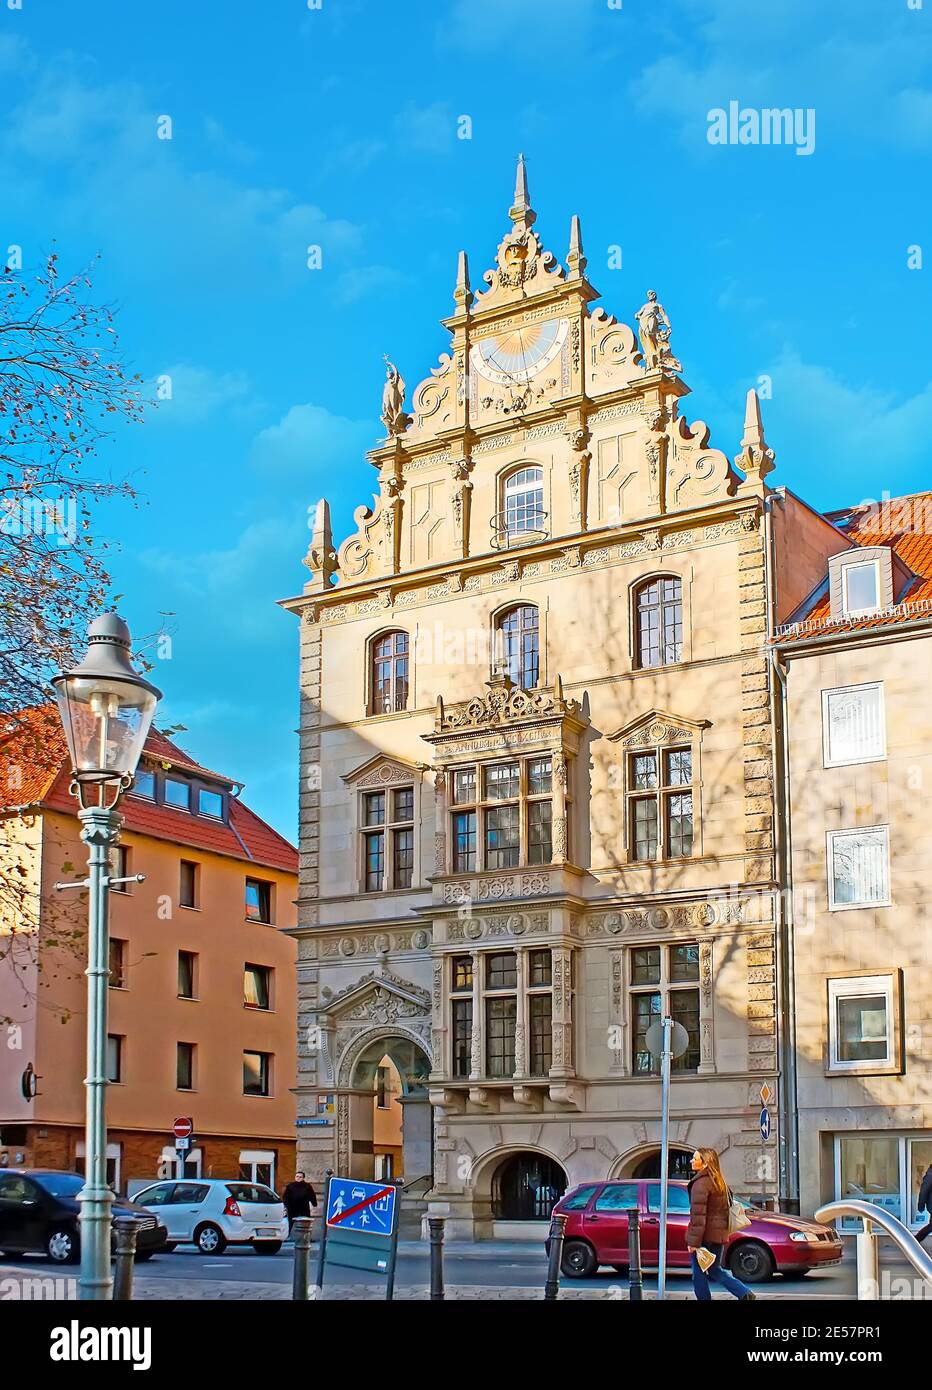 Il pittoresco palazzo storico con tetto a gradinata, solarium e intagli ornamentali, una via del Martinkirche, Braunschweig, Germania Foto Stock